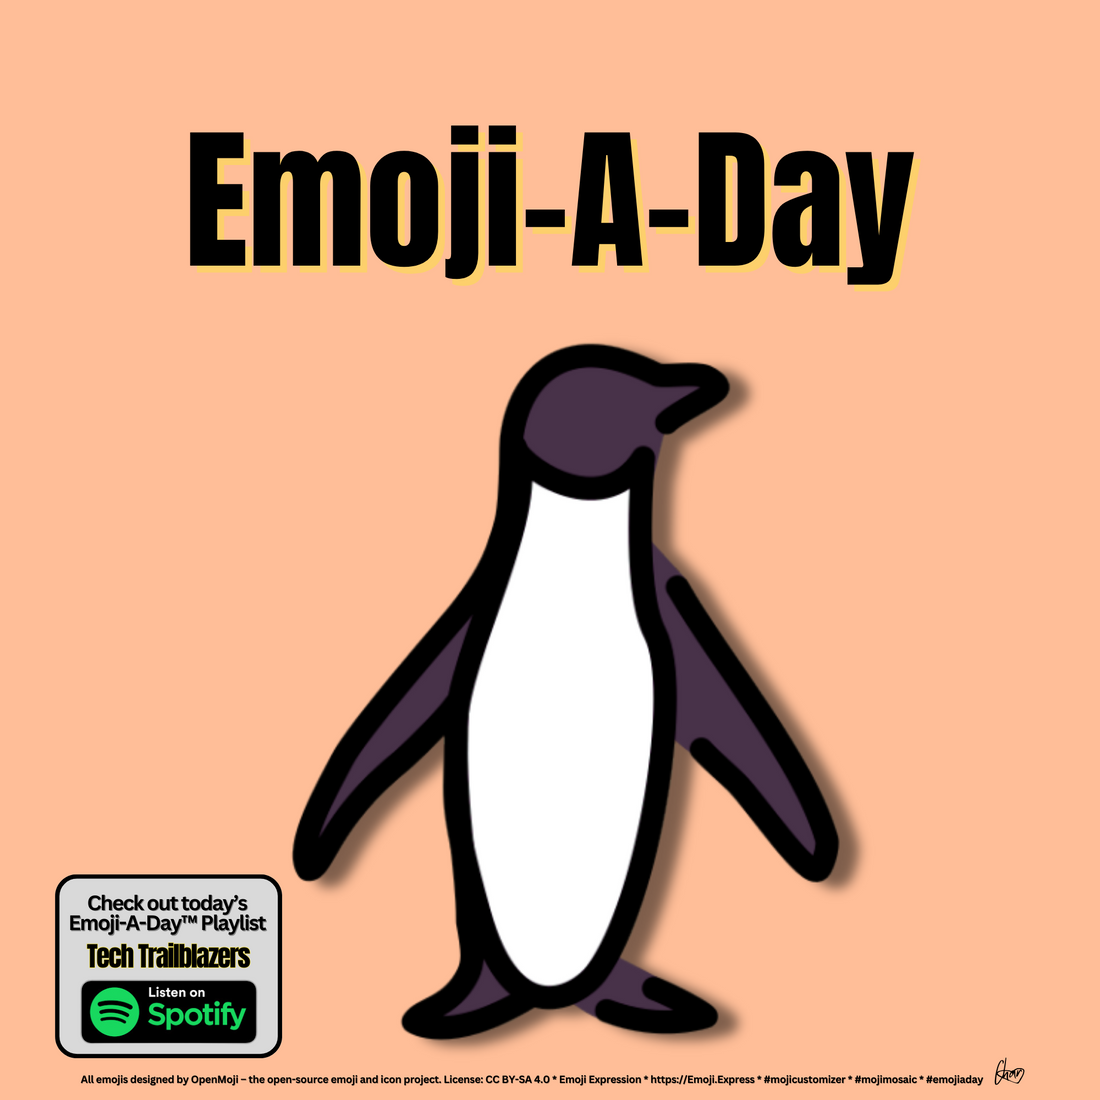 Emoij-A-Day theme with Penguin emoji and Tech Trailblazers Spotify Playlist